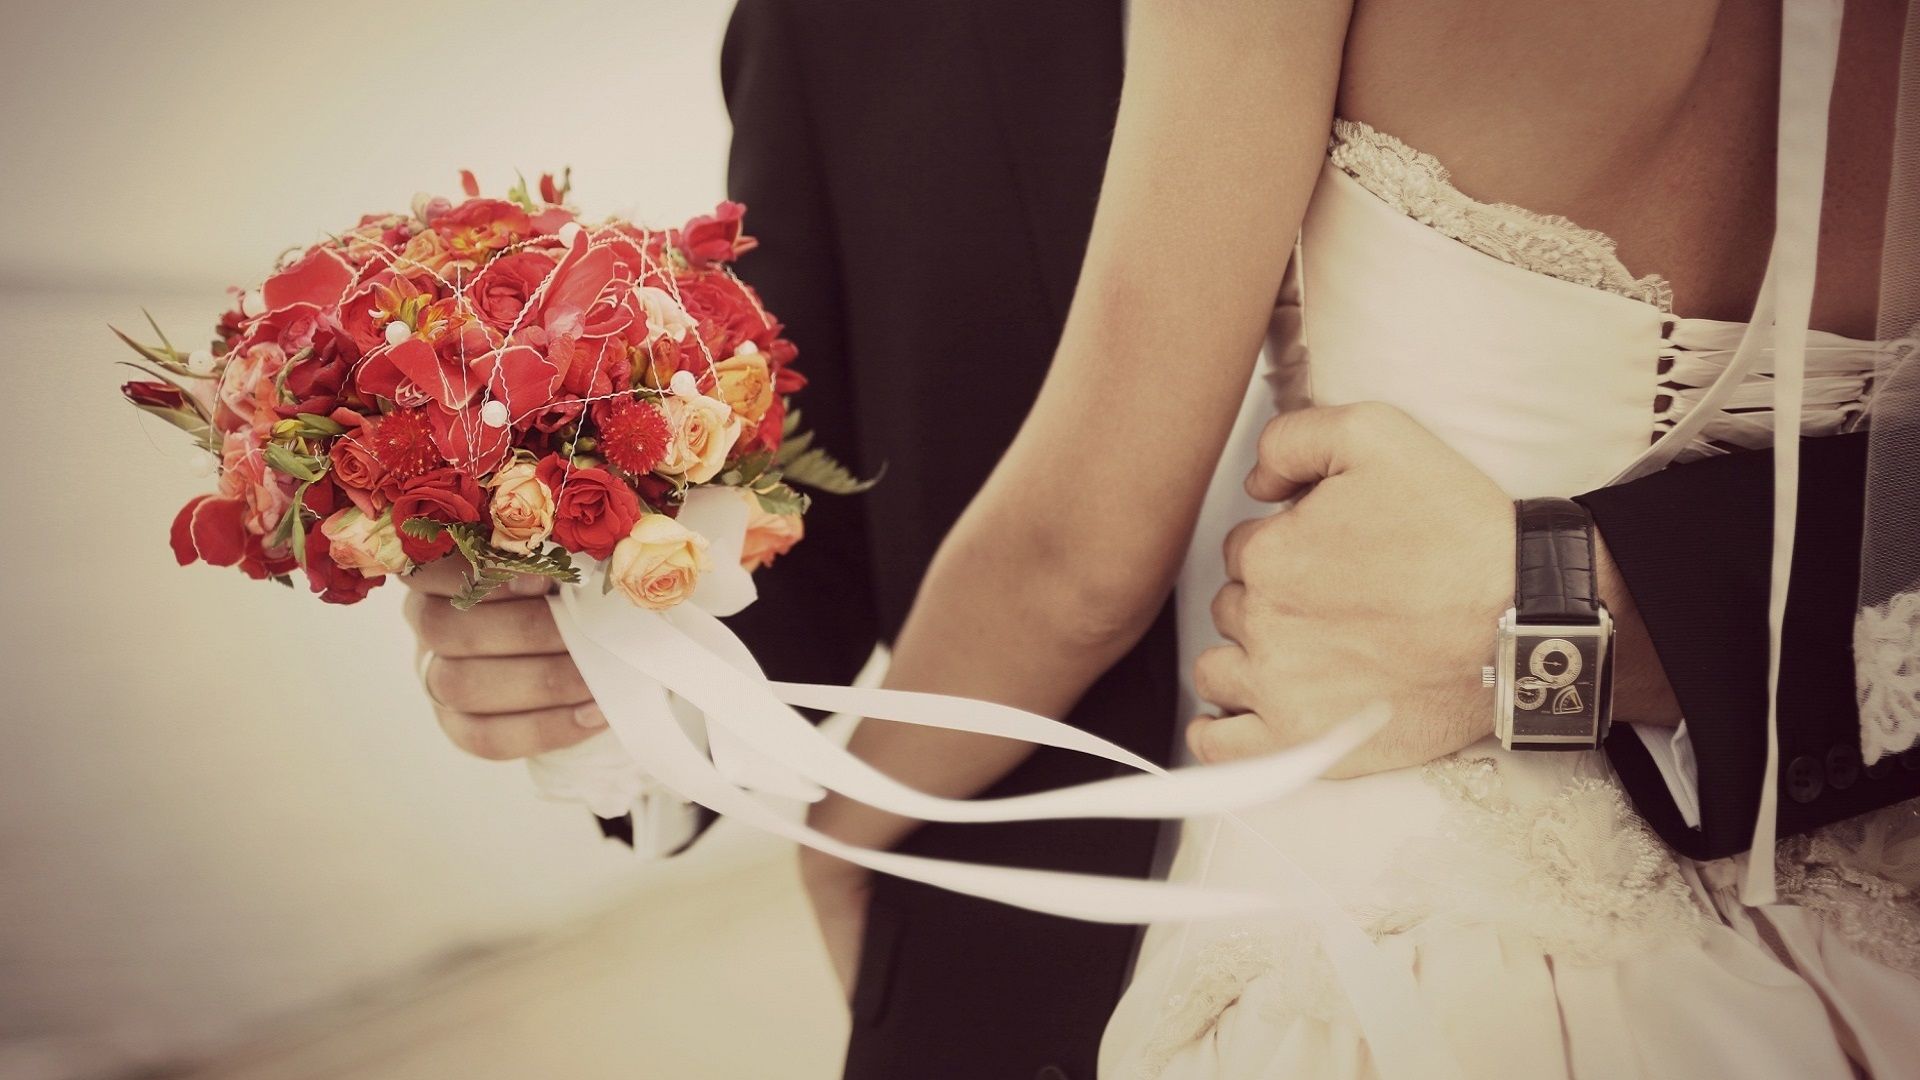 ASTON WEDDING FAIR 2015 – ACARAKITE